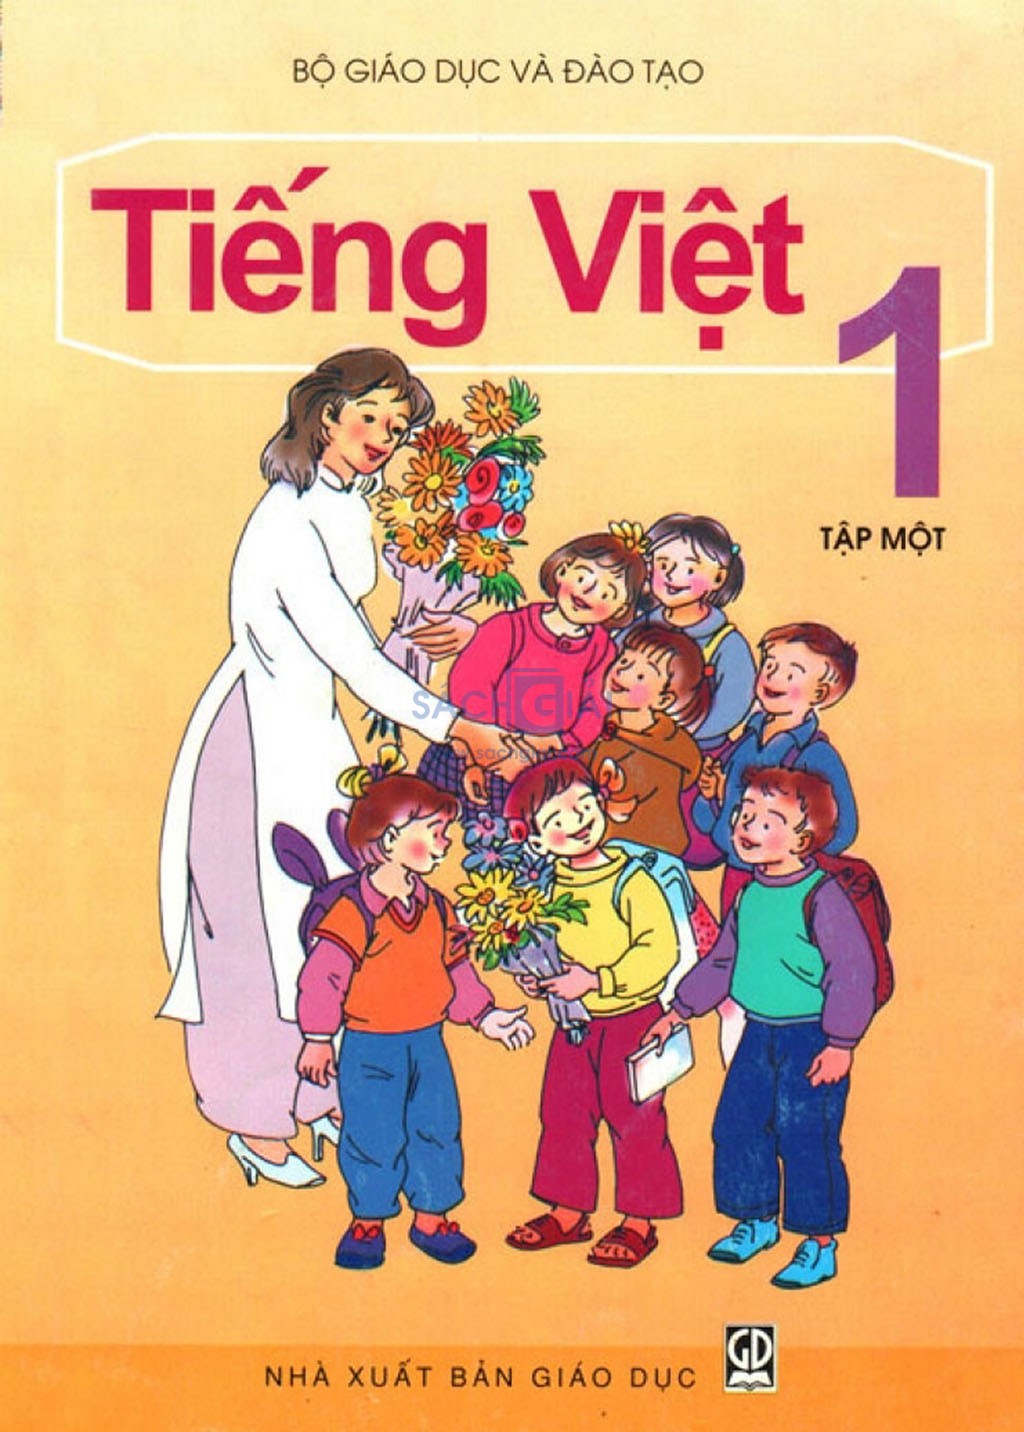 Tiếng Việt luôn đa dạng, phong phú và có nhiều cách kết hợp phức tạp